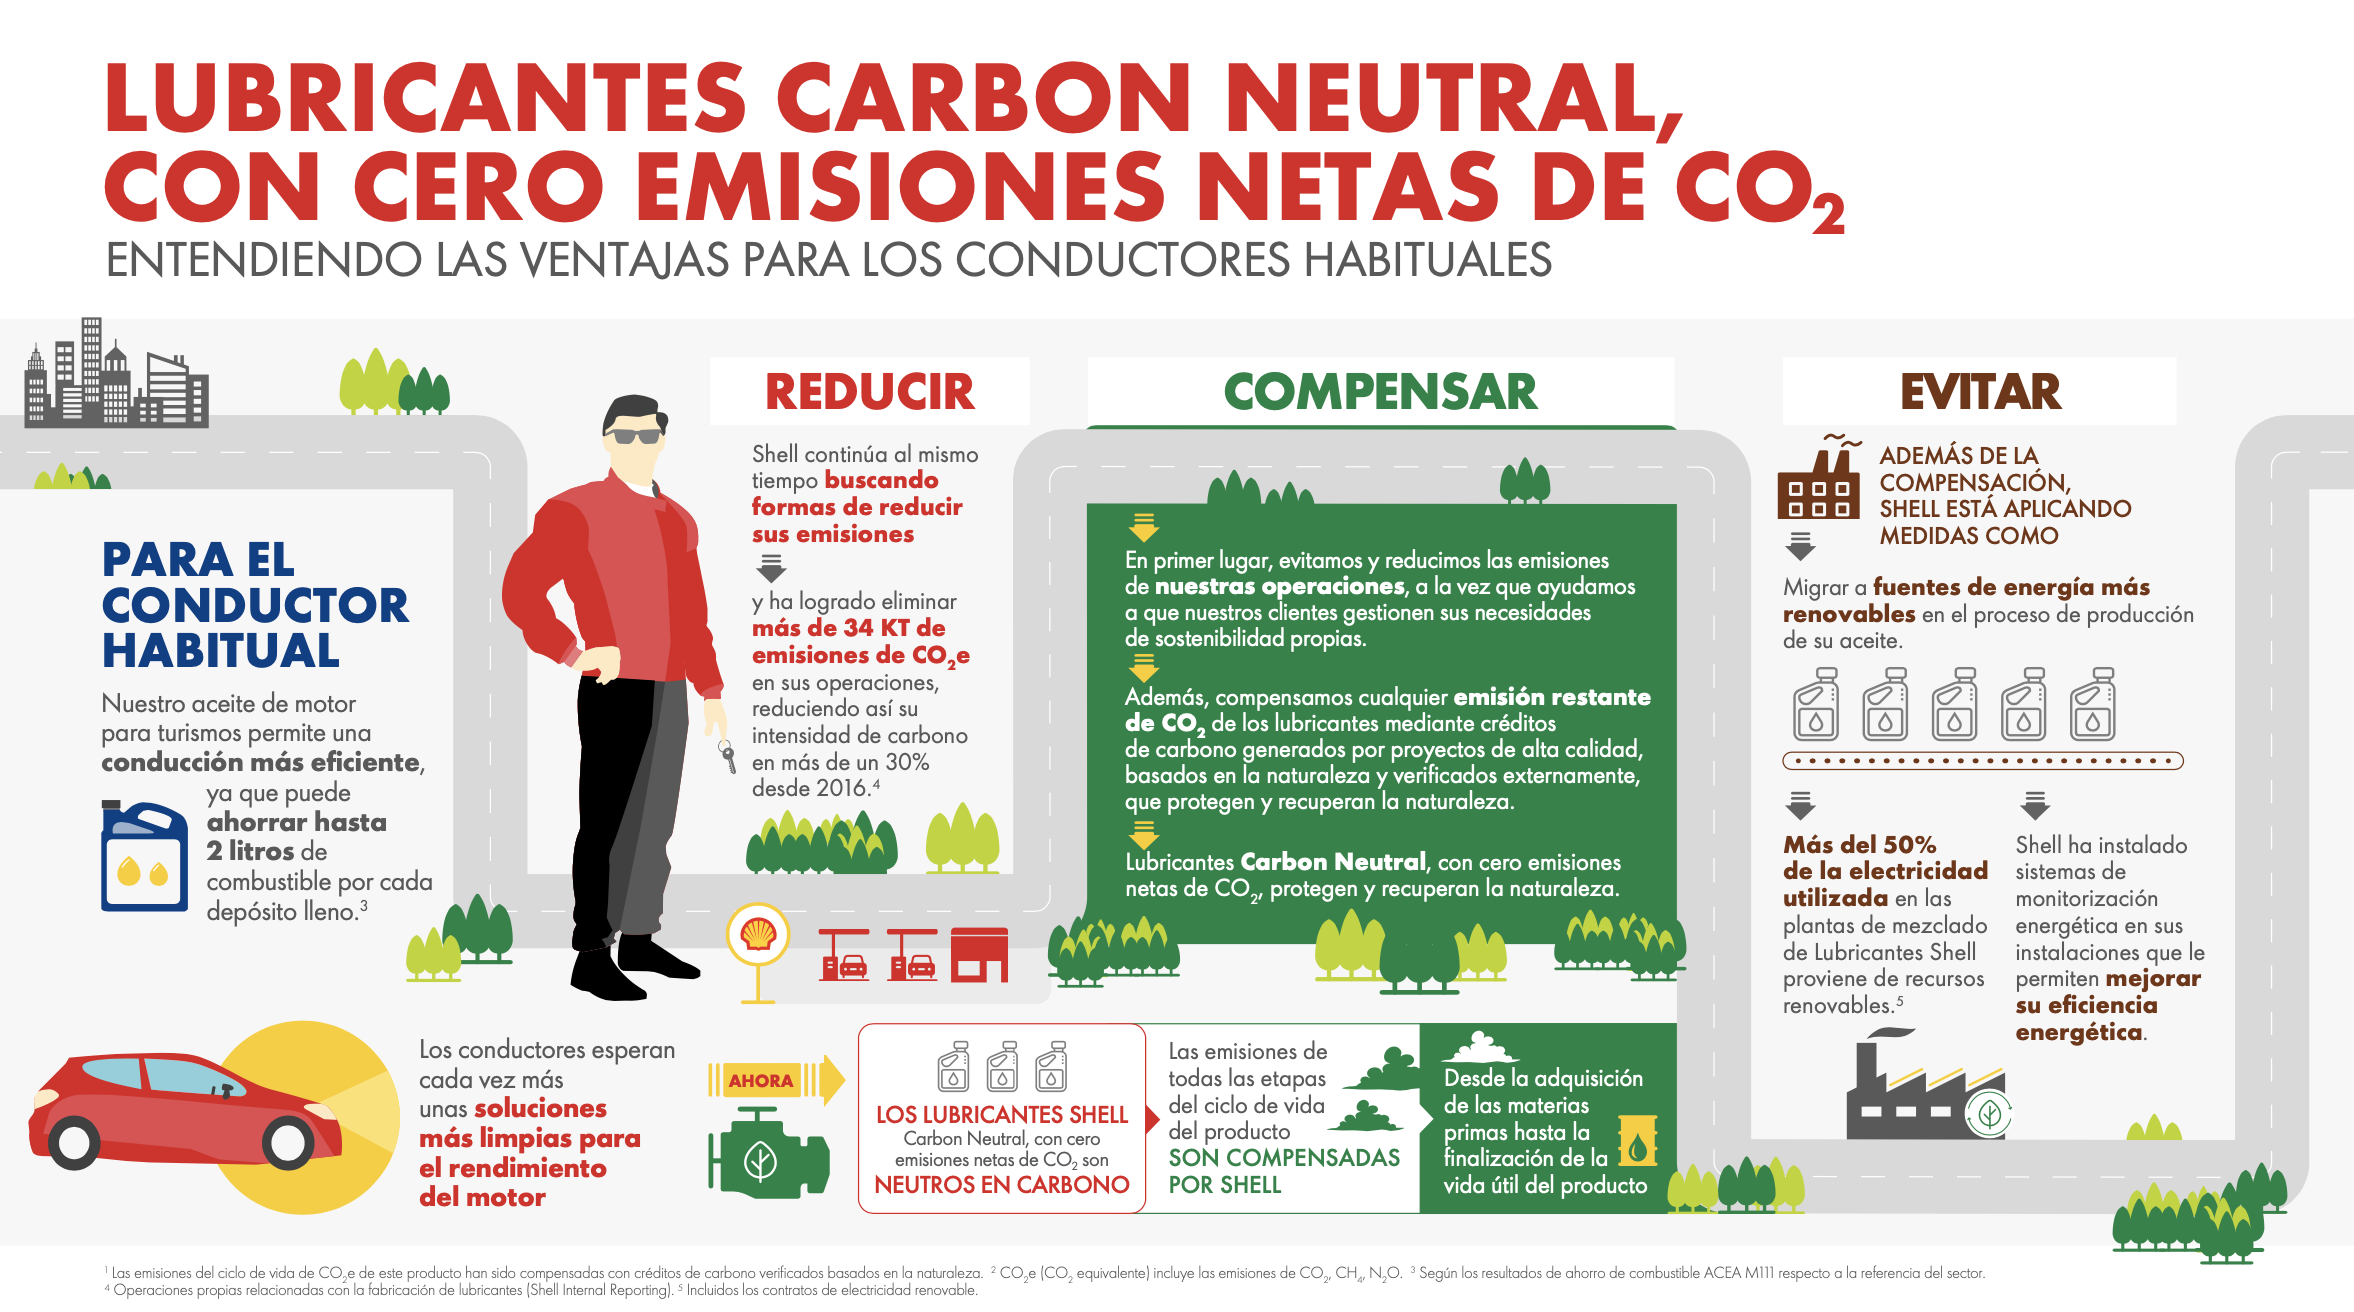 Lubricantes carbon neutral con cero emisiones netas de CO2